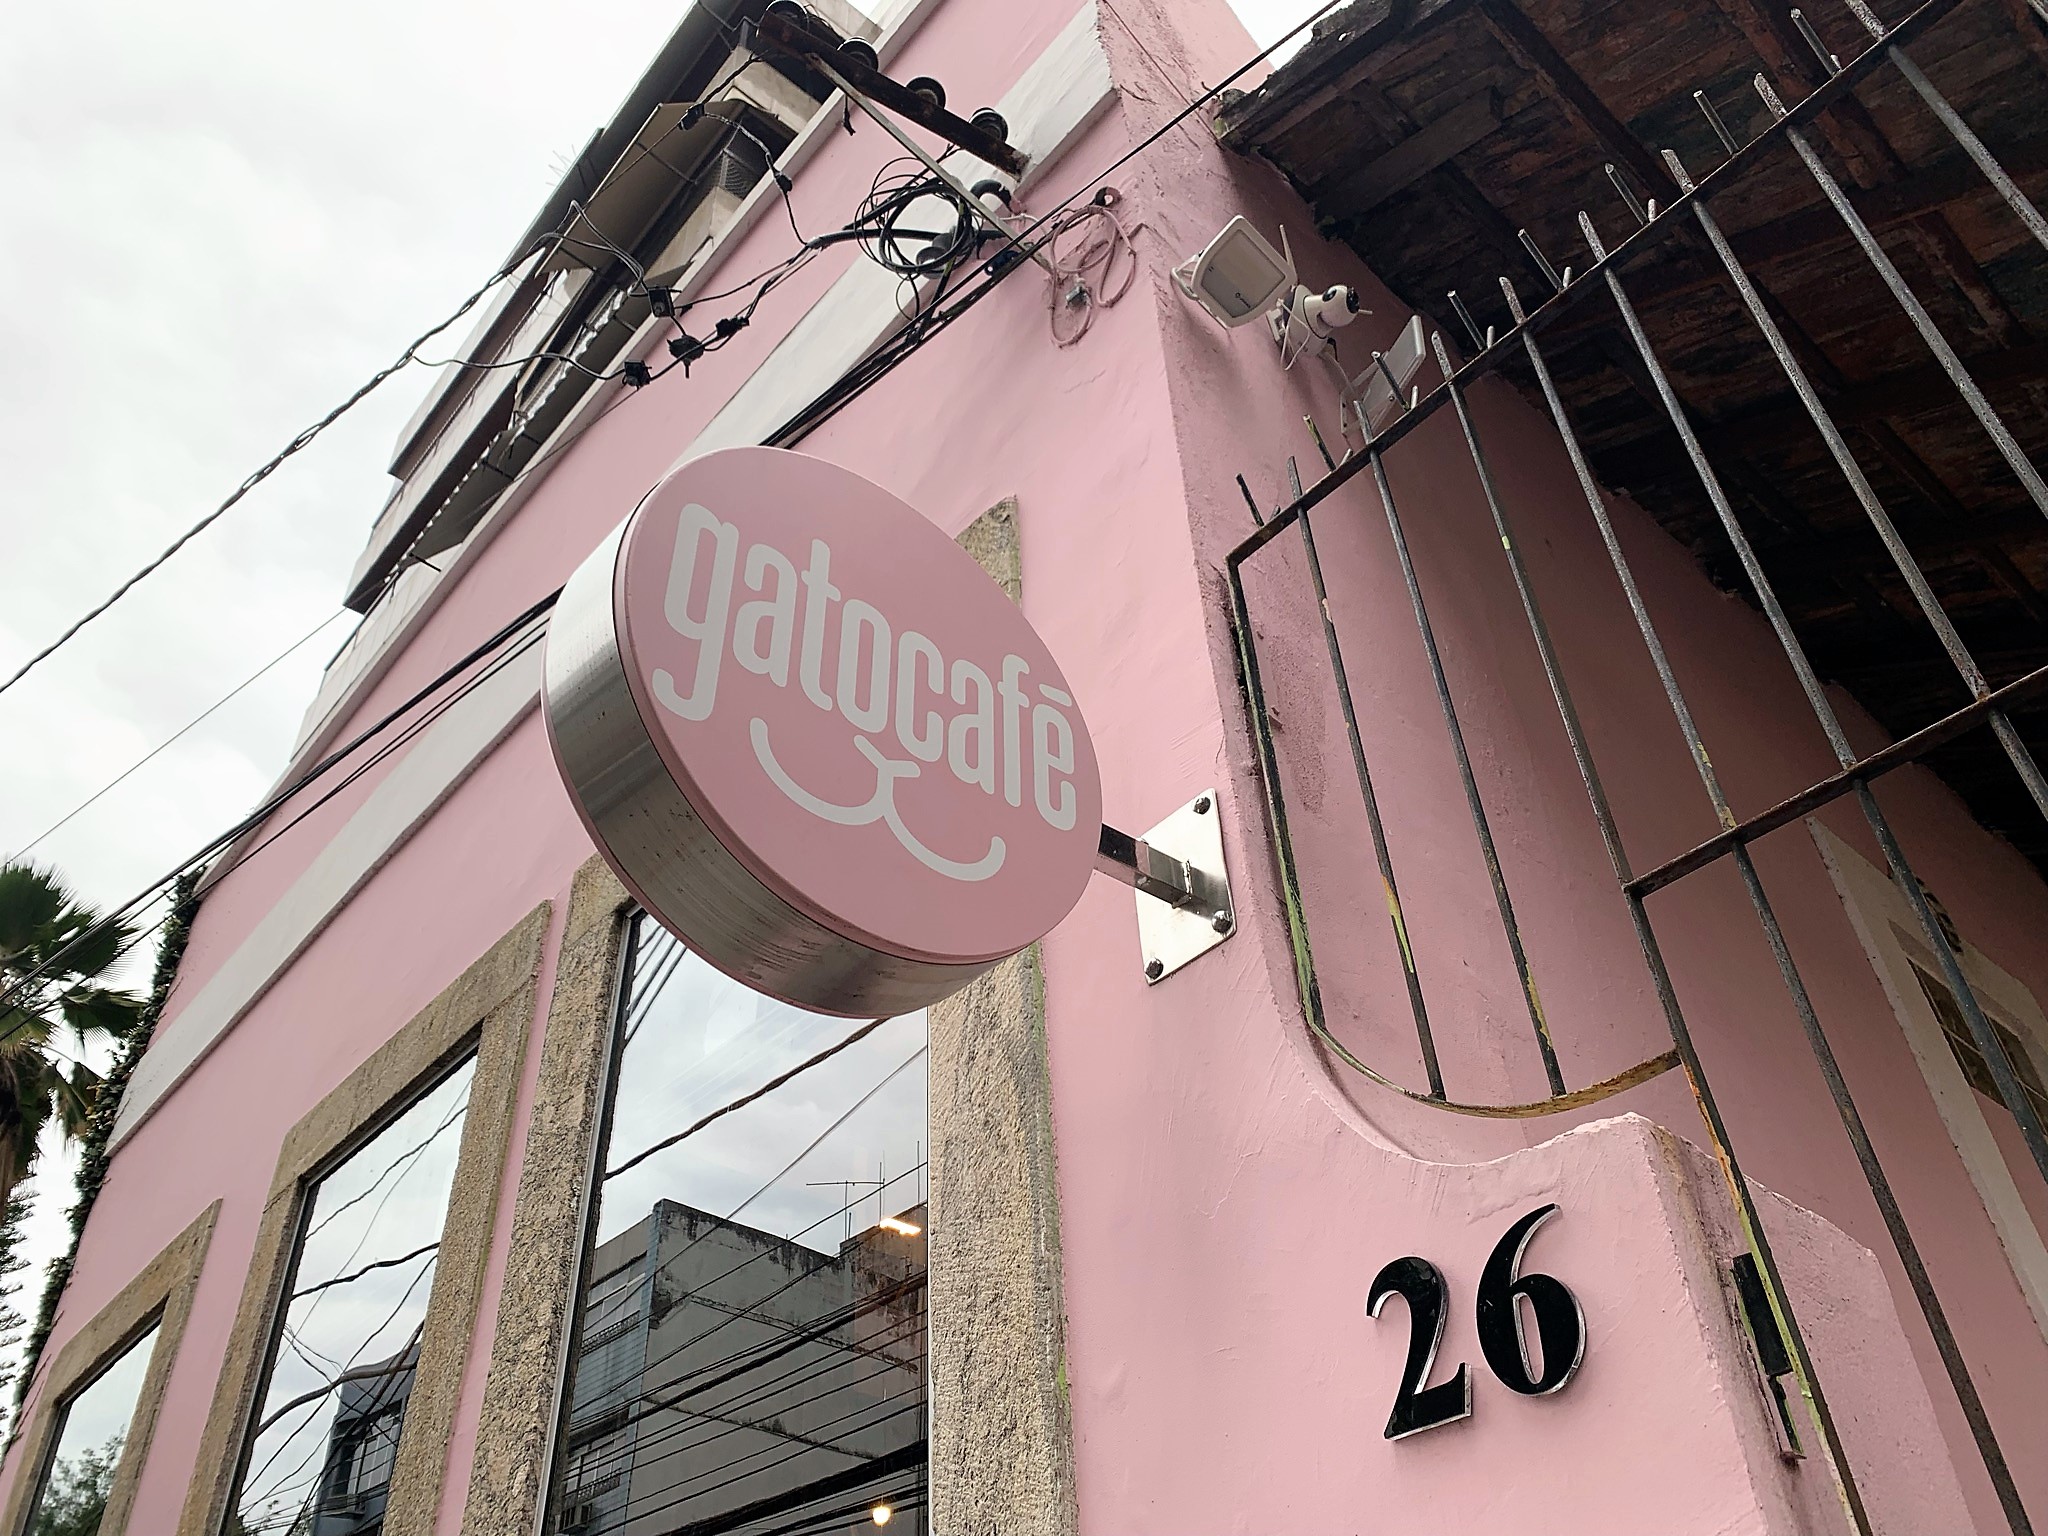 Foto da fachada do casarão do GatoCafé em rosa com destaque para logo da cafeteria